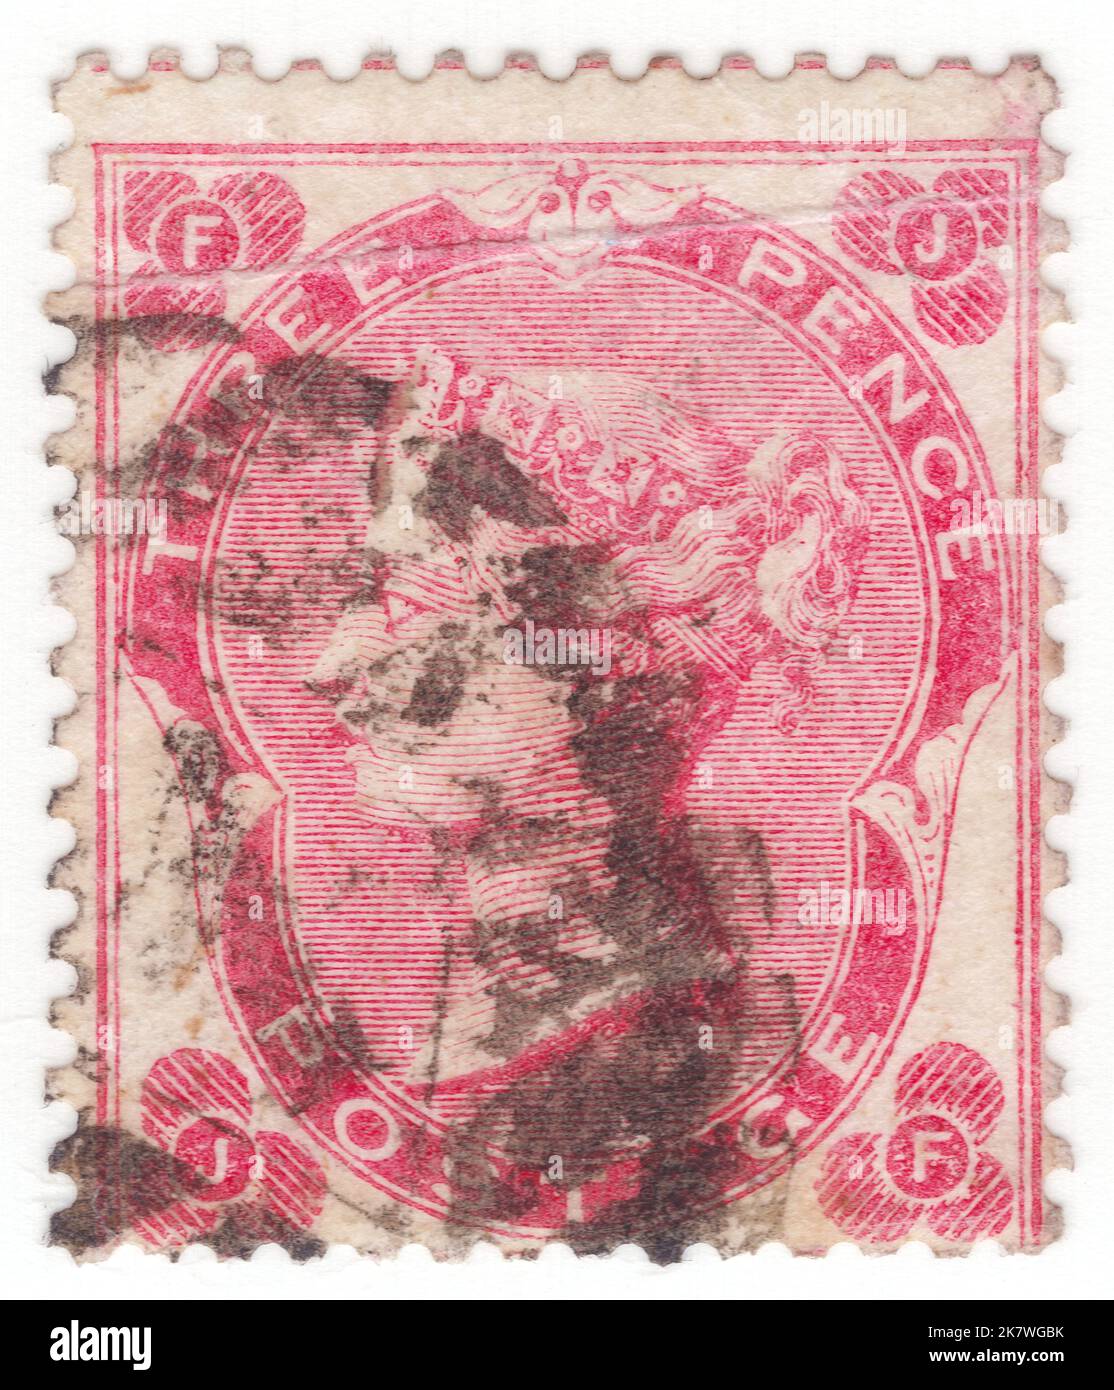 REINO UNIDO - 1862: Un sello de franqueo de color rosa pálido de 3 pence que muestra el retrato de la reina Victoria Foto de stock